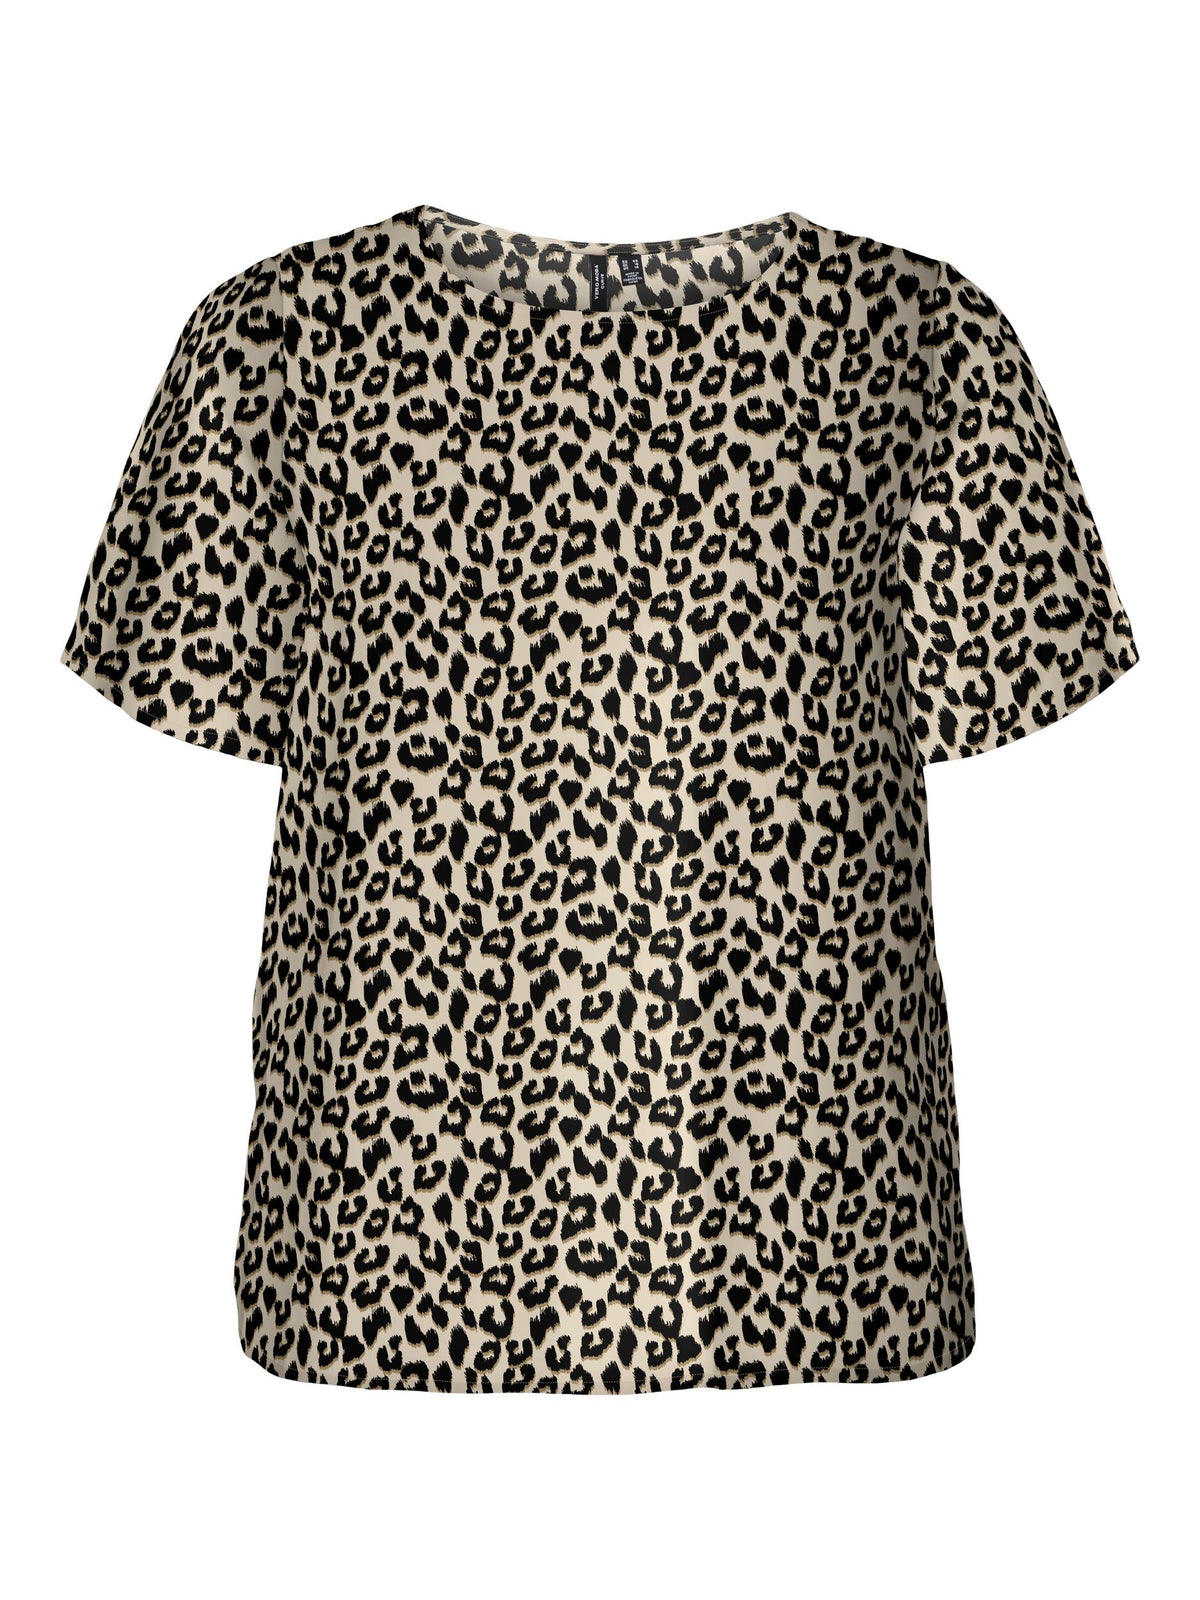 Vero Moda Curve Blouse in Leopard - Wardrobe Plus